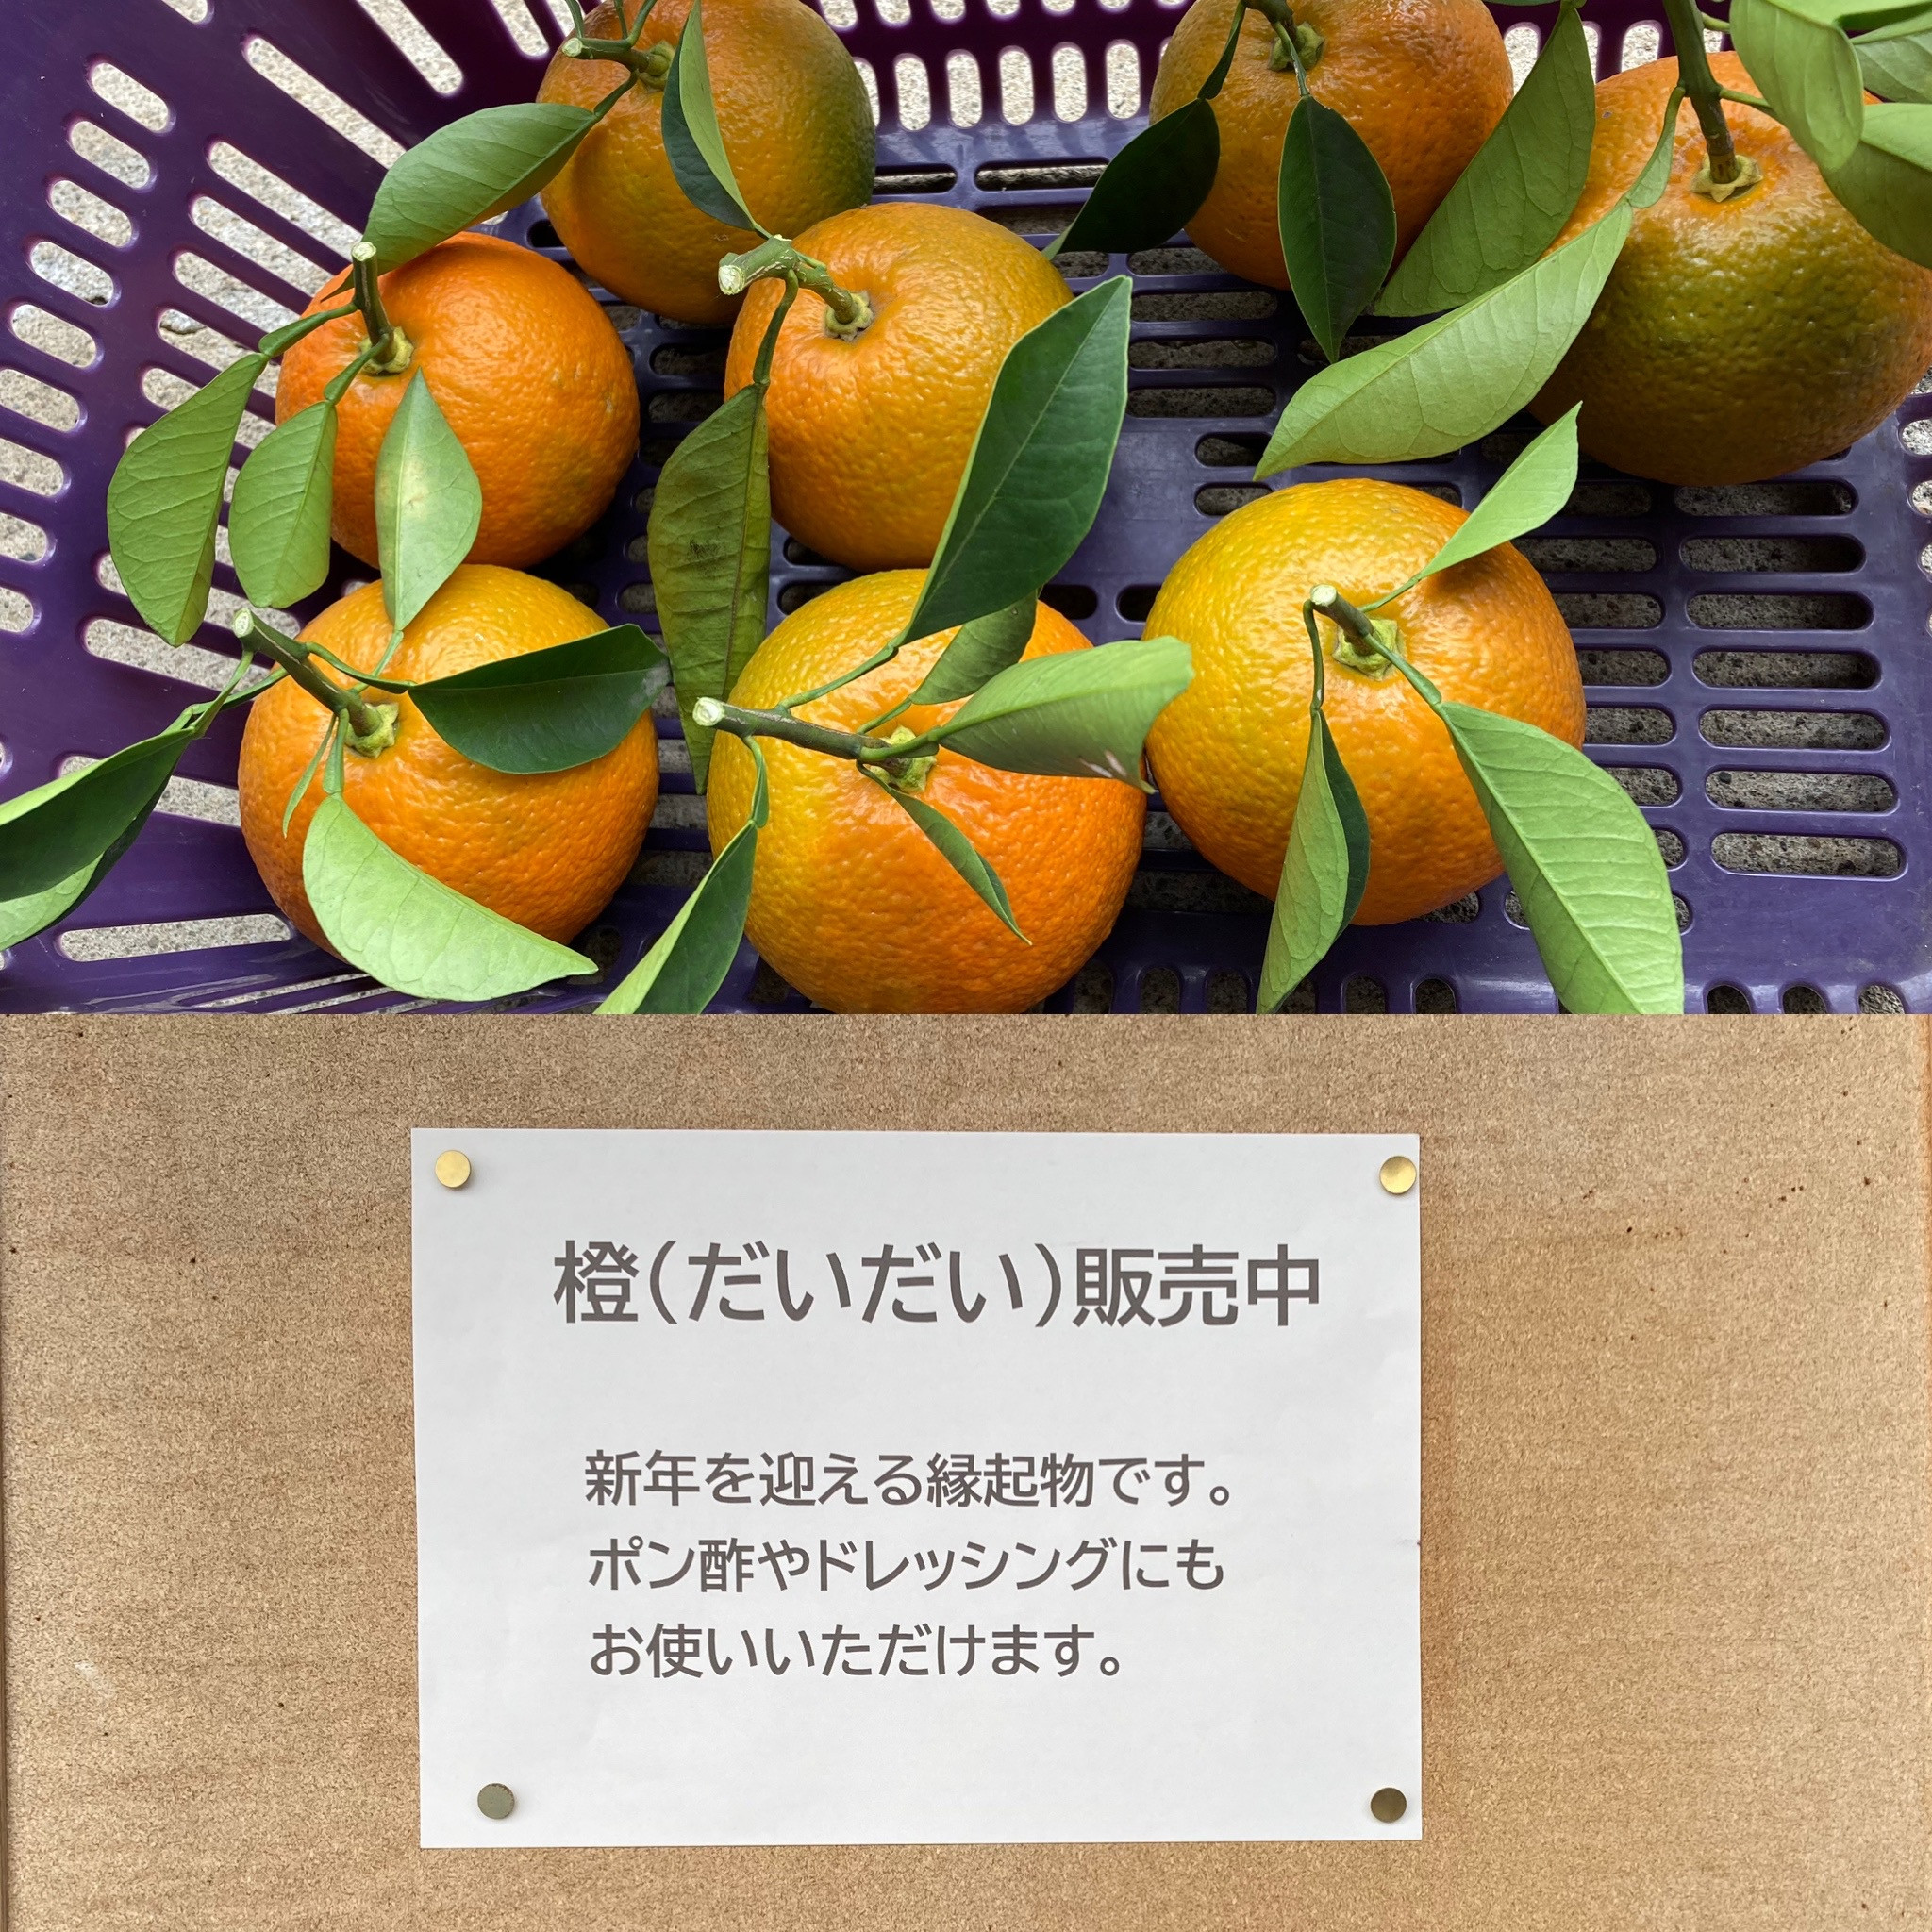 橙の販売を始めました